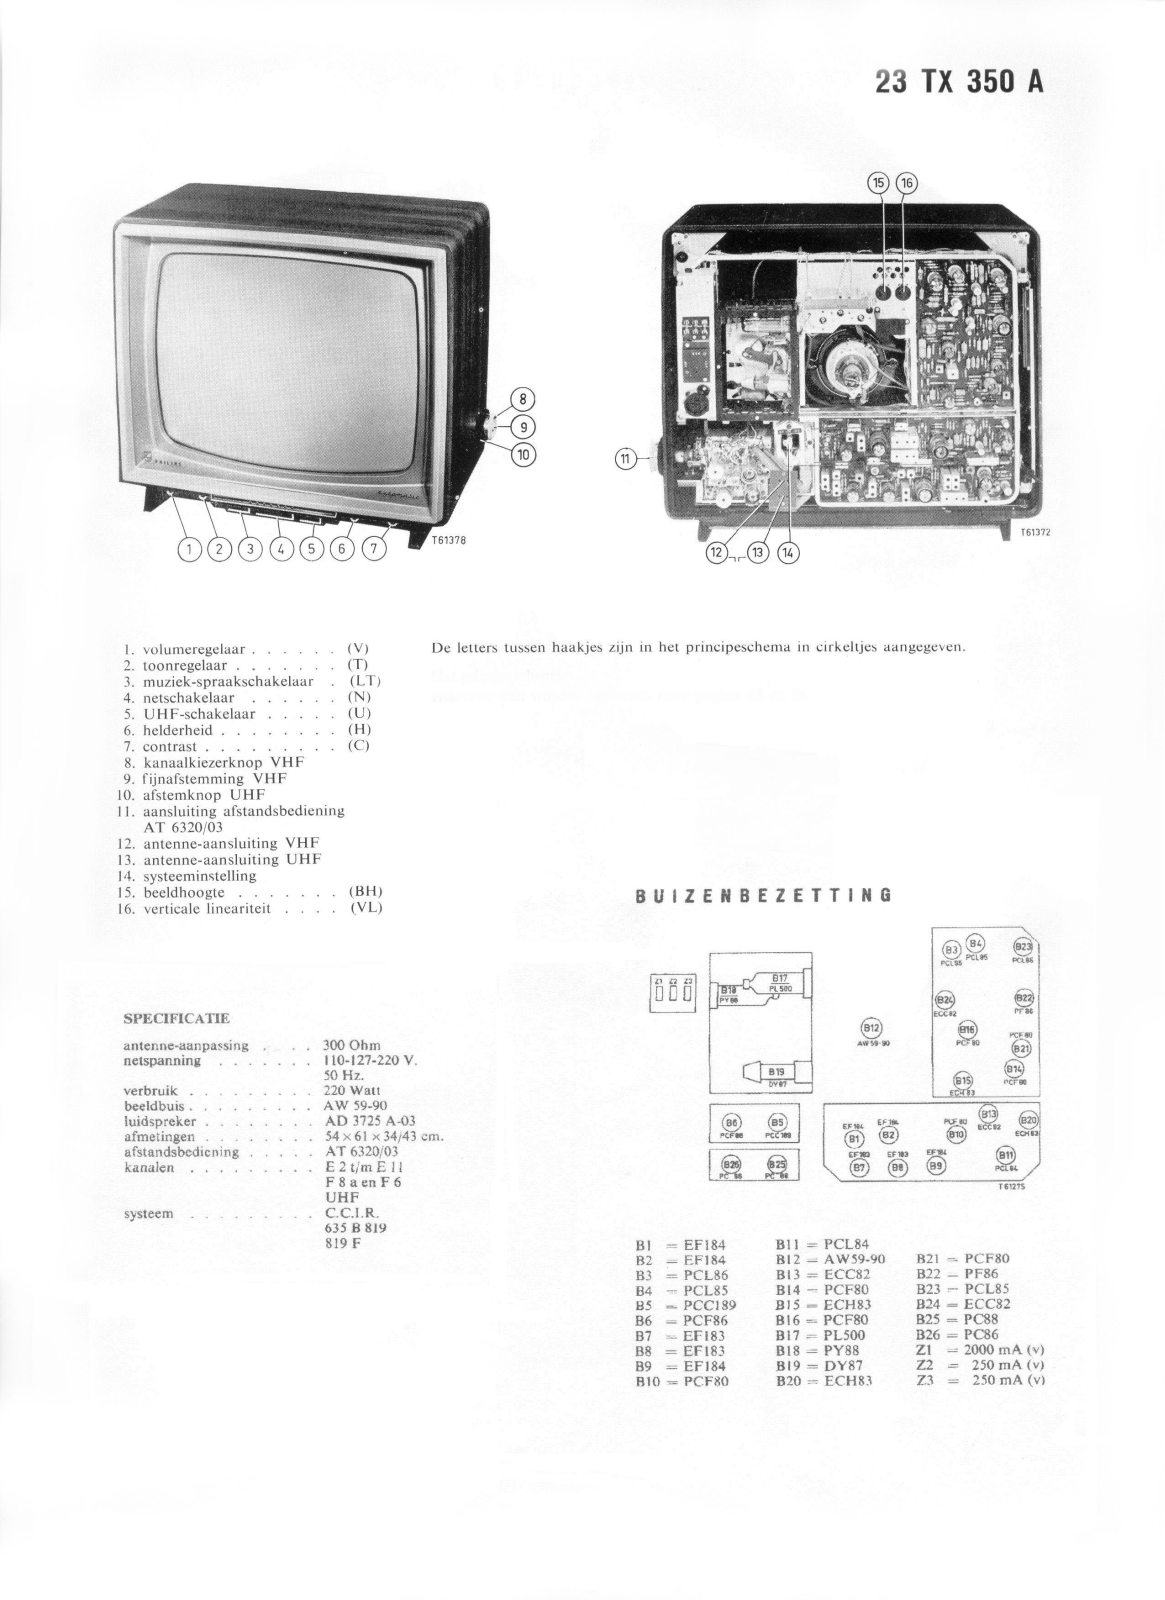 Philips 23tx350a Schematic